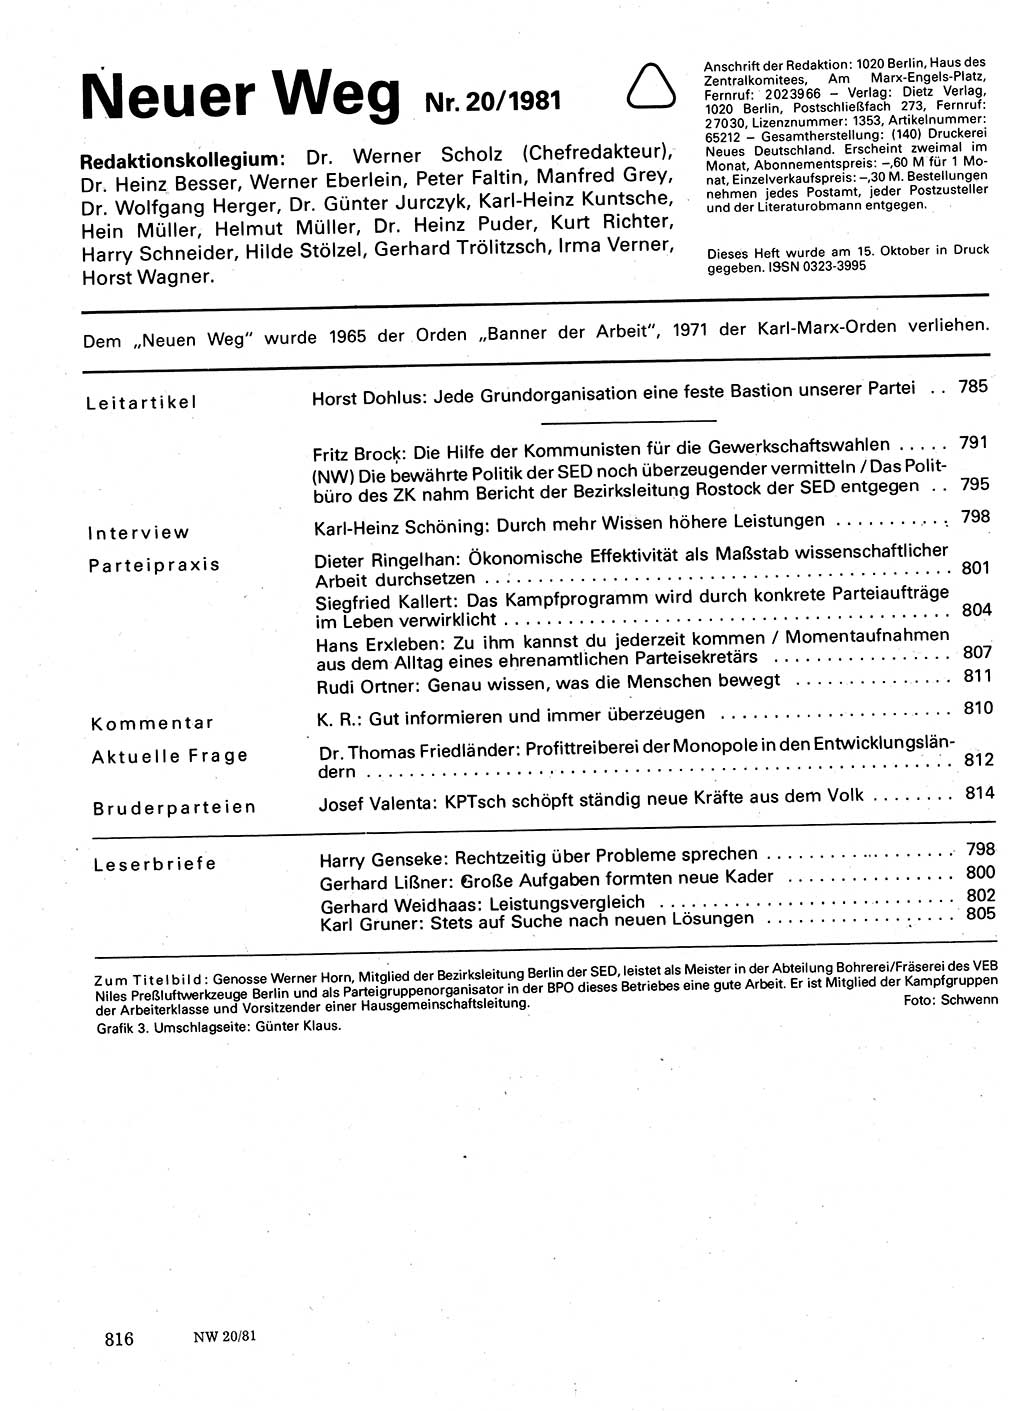 Neuer Weg (NW), Organ des Zentralkomitees (ZK) der SED (Sozialistische Einheitspartei Deutschlands) für Fragen des Parteilebens, 36. Jahrgang [Deutsche Demokratische Republik (DDR)] 1981, Seite 816 (NW ZK SED DDR 1981, S. 816)